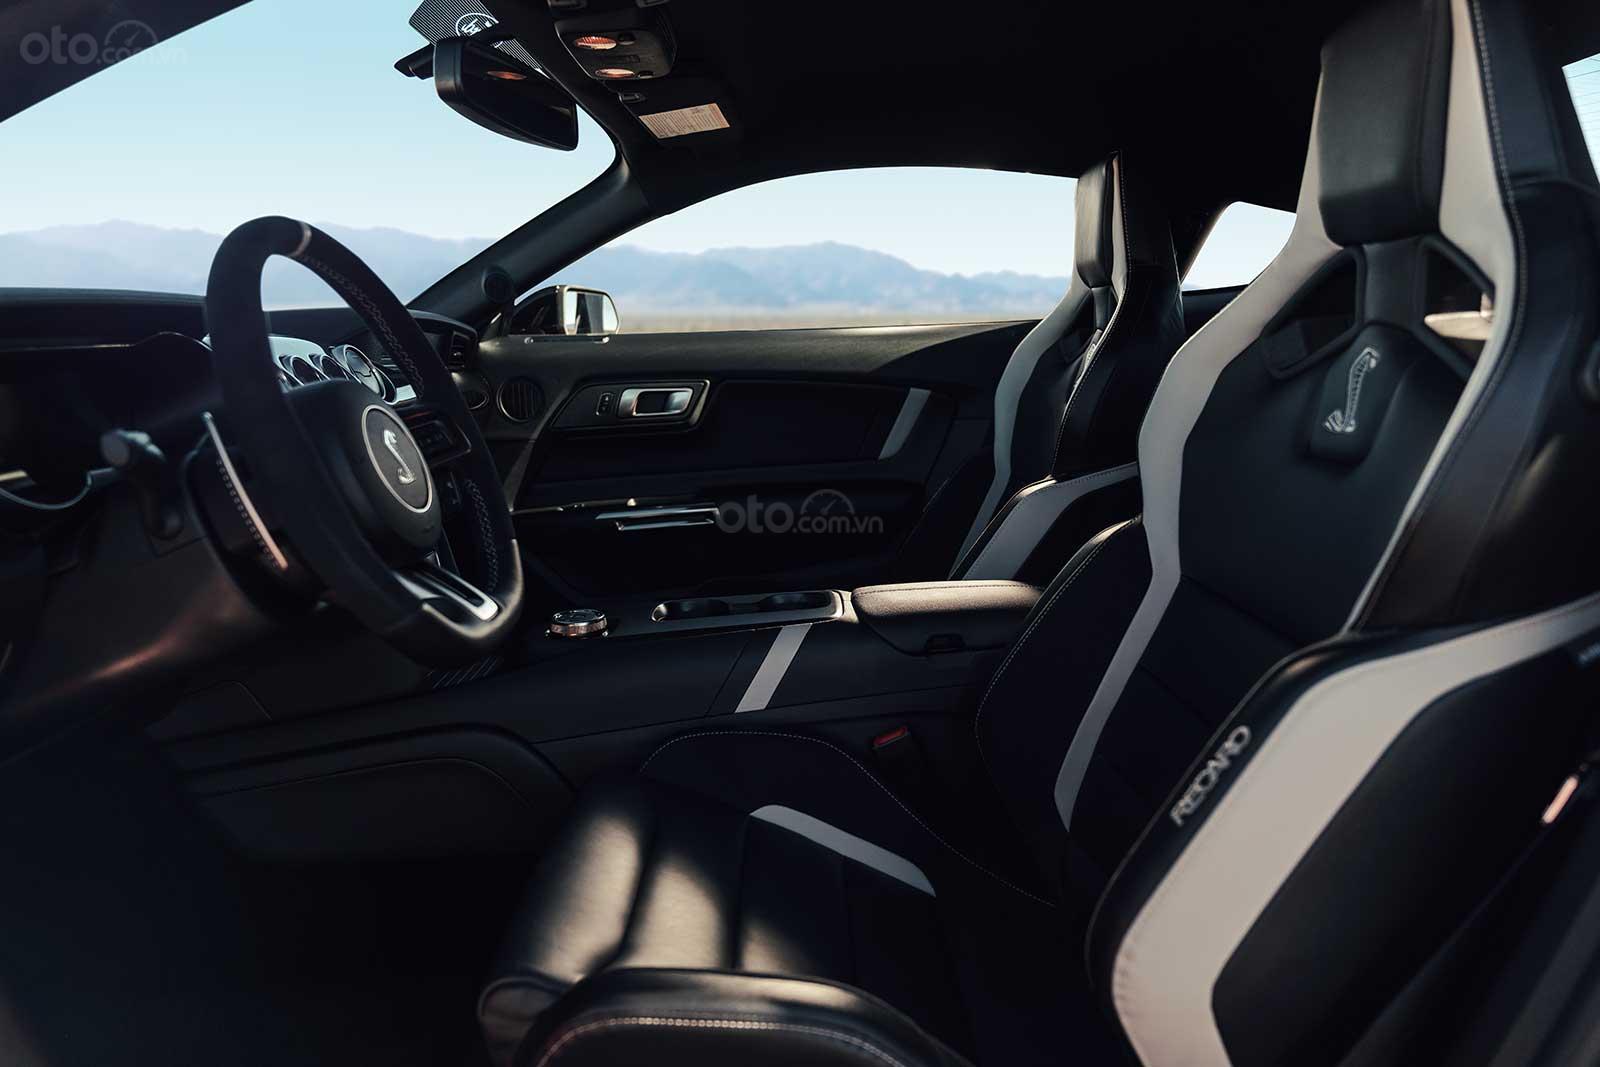 Ford Mustang Shelby GT500 2020 cung cấp trải nghiệm lái thú vị